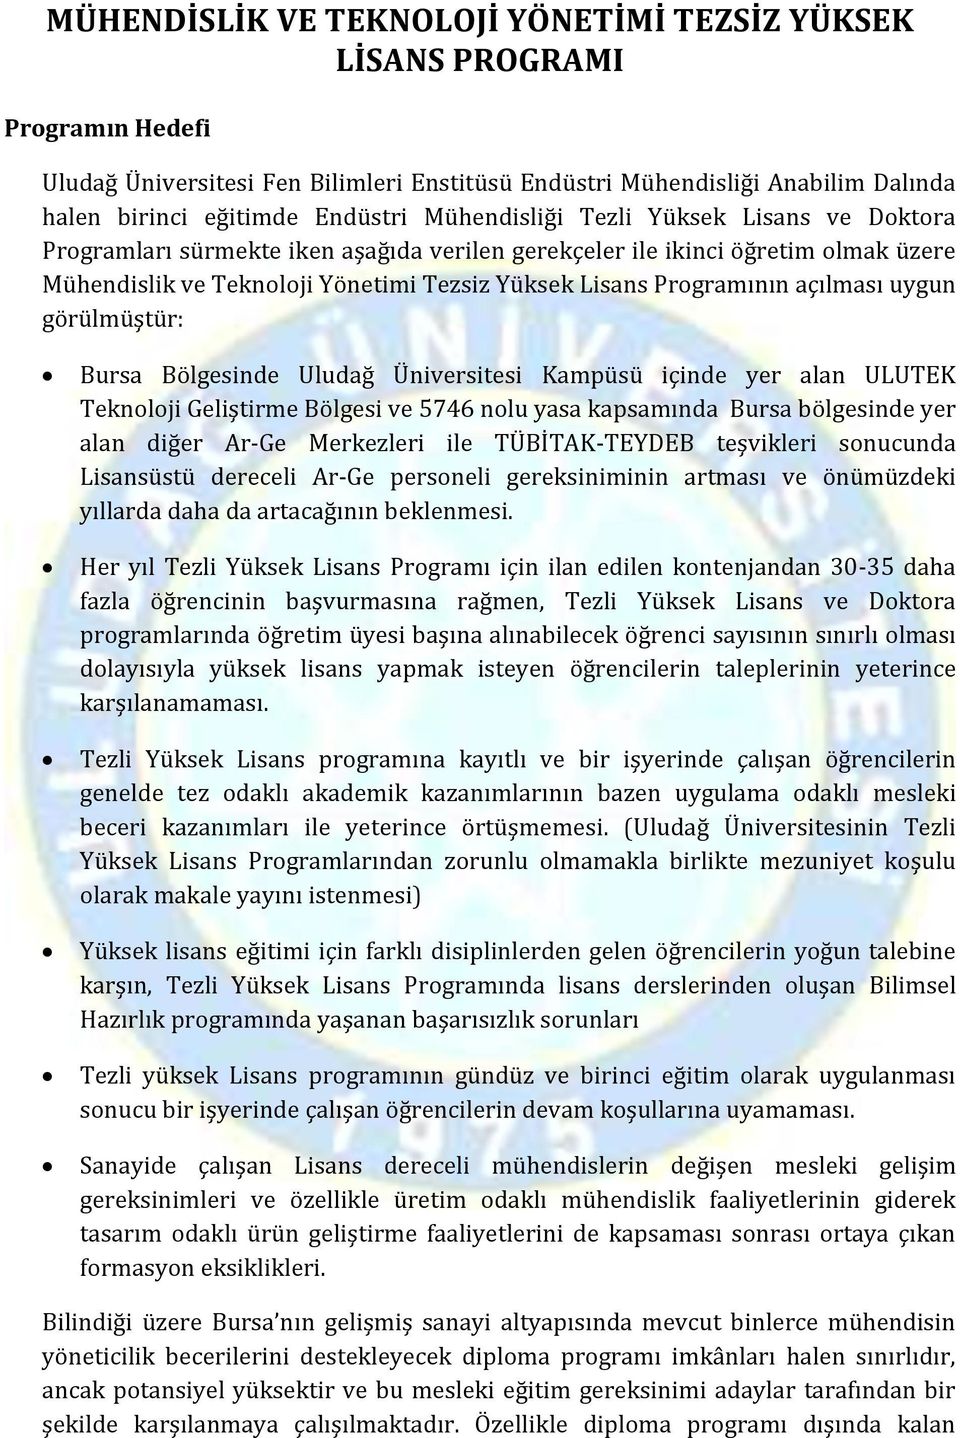 Bölgesinde Uludağ Üniversitesi Kampüsü içinde yer alan ULUTEK Teknoloji Geliştirme Bölgesi ve 5746 nolu yasa kapsamında Bursa bölgesinde yer alan diğer Ar-Ge Merkezleri ile TÜBİTAK-TEYDEB teşvikleri